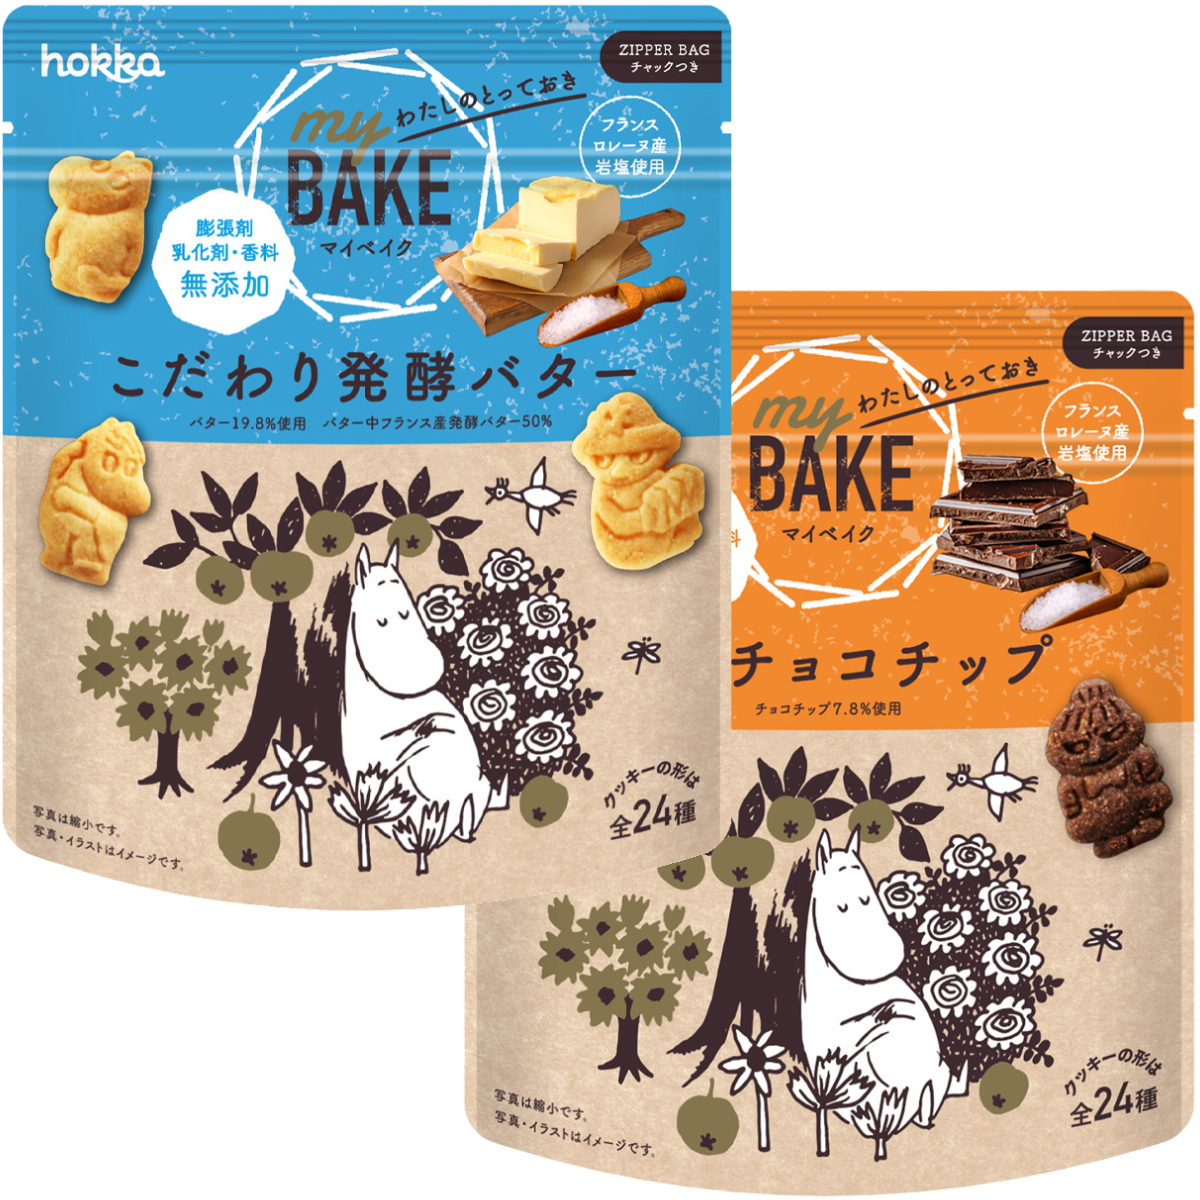 【北陸製菓】ムーミン my BAKE こだわり発酵バター・濃厚チョコチップ MOOMIN